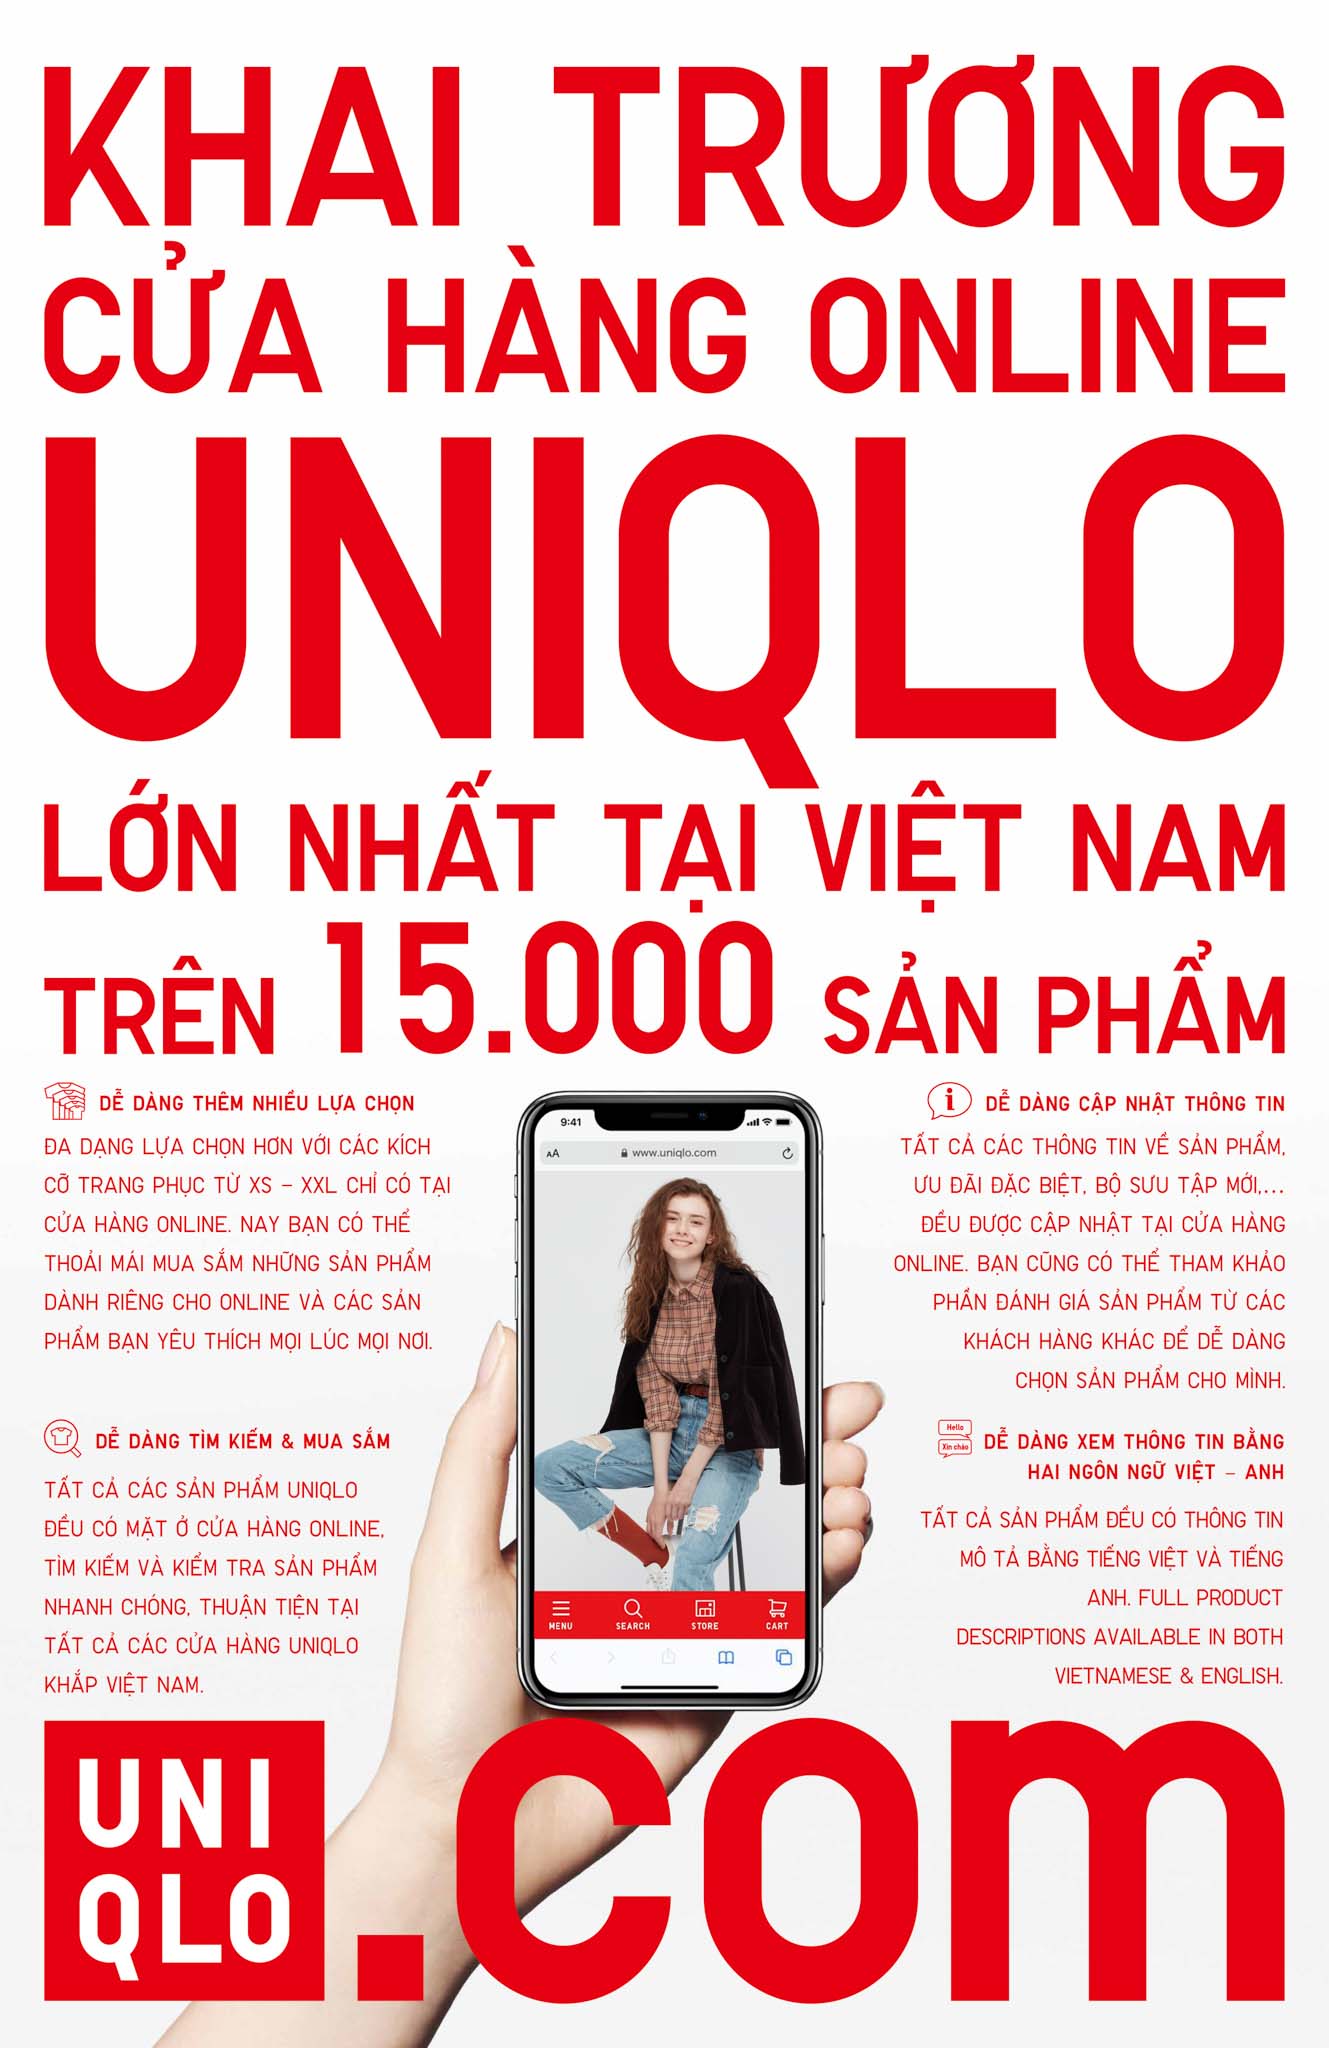 UNIQLO khai trương Cửa hàng online tại Việt Nam vào thứ sáu 5/11/2021